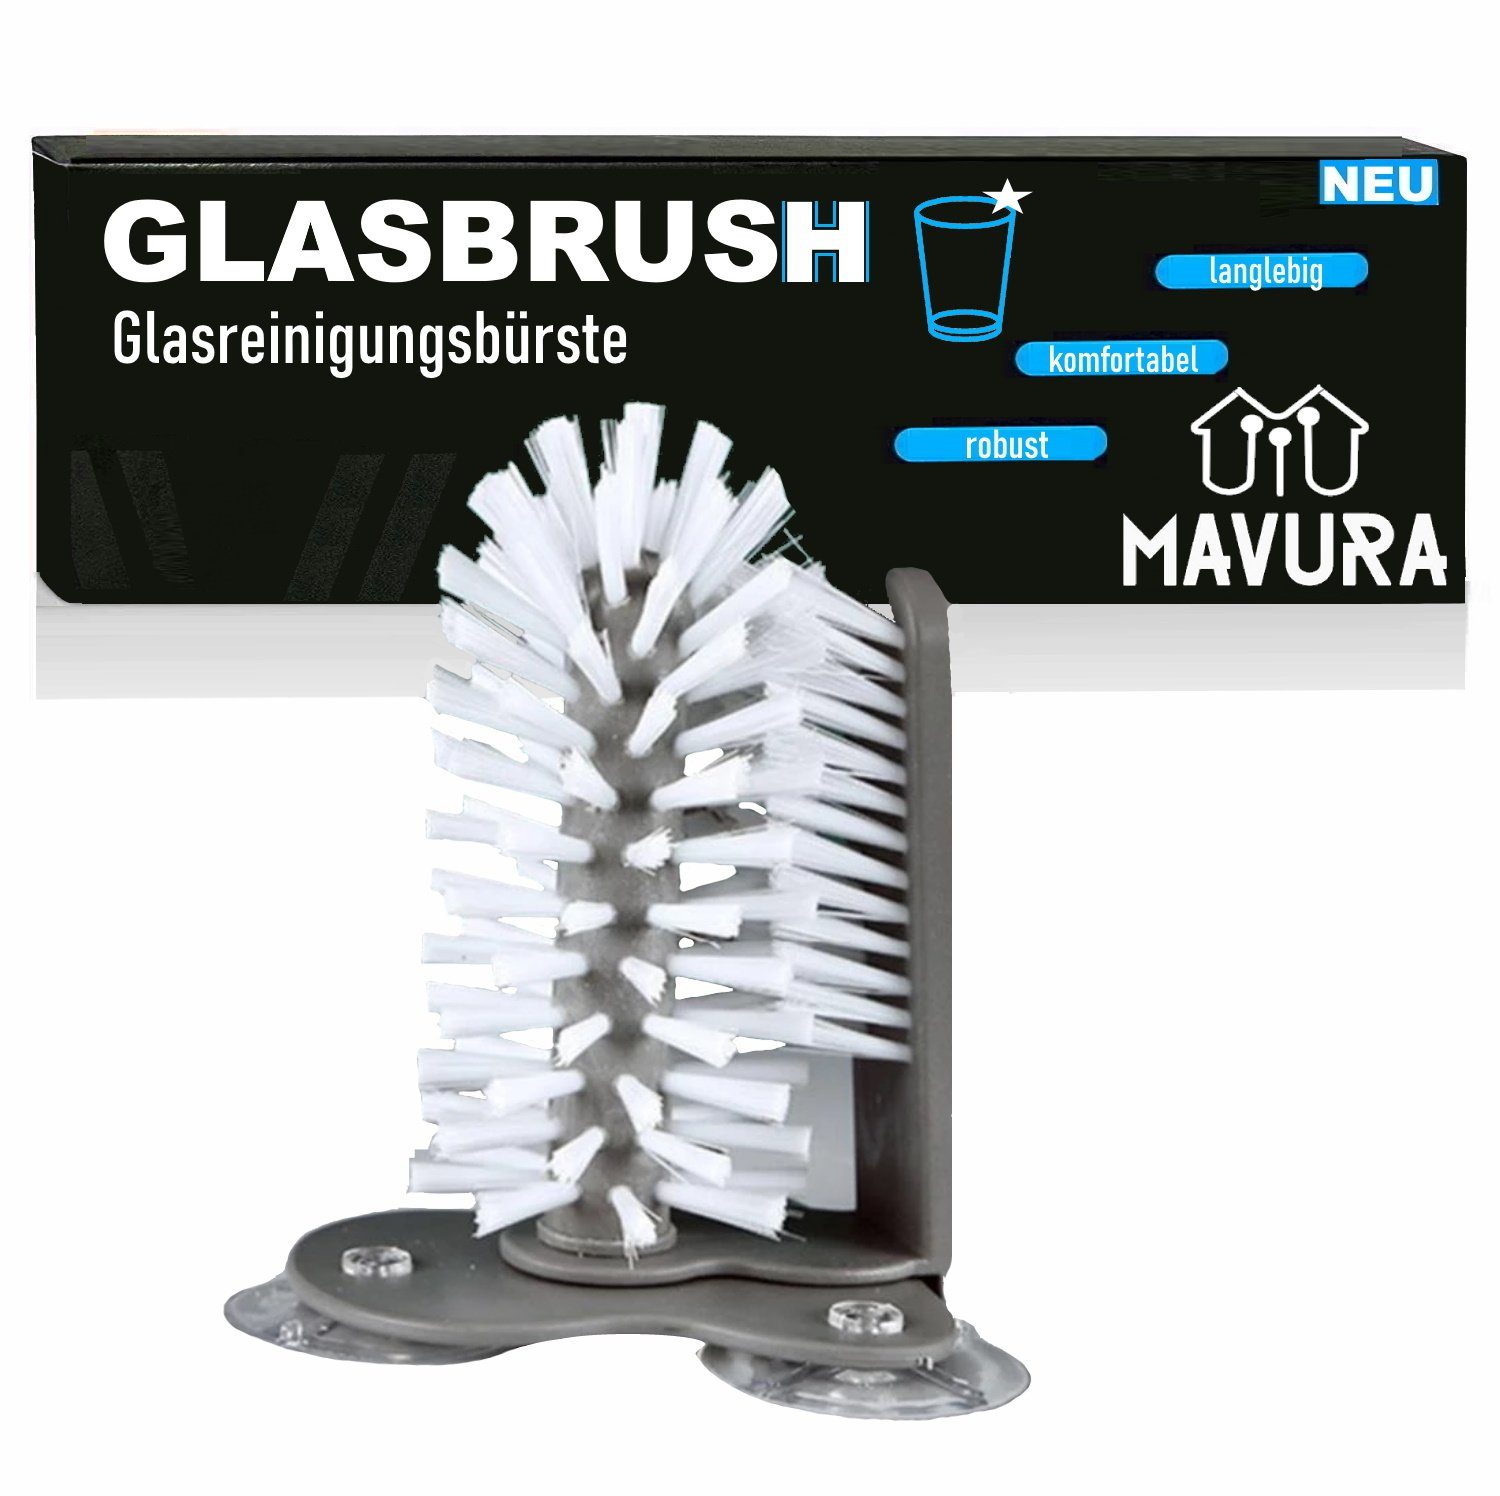 MAVURA Reinigungsbürste GLASBRUSH Glasspülbürste Glasreinigungsbürste  Gläserspülbürste, (mit Saugnapf für Spülbecken), Schankbürste Gläserbürste  Gläser Glasbürste Reinigungsbürste